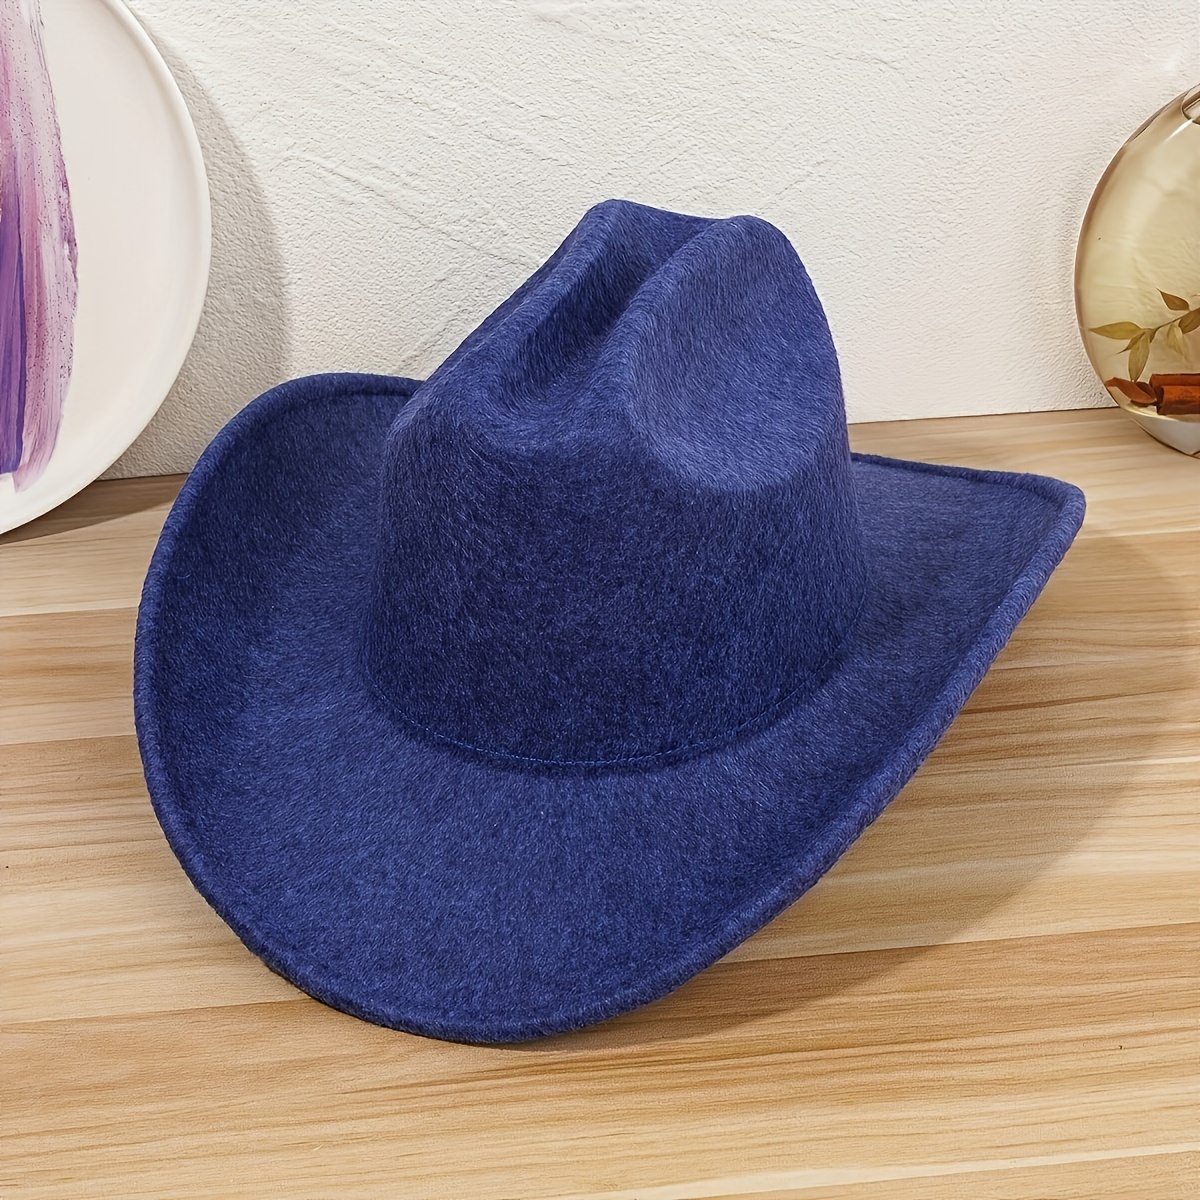 Los más vendidos: Mejor Sombreros Vaqueros para Hombre